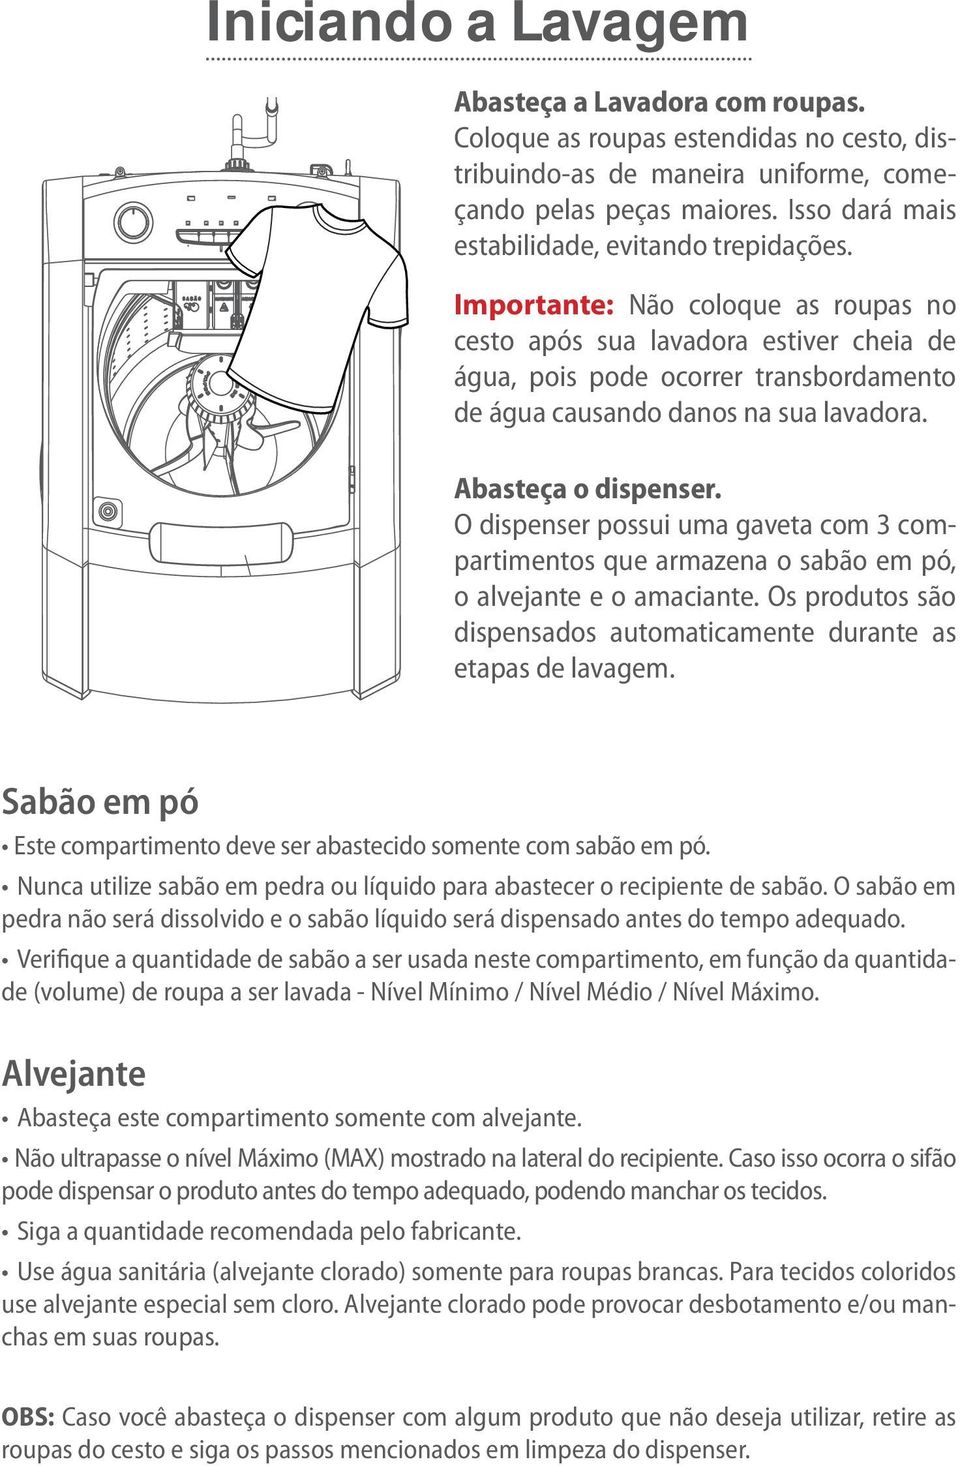 Importante: Não coloque as roupas no cesto após sua lavadora estiver cheia de água, pois pode ocorrer transbordamento de água causando danos na sua lavadora. Abasteça o dispenser.